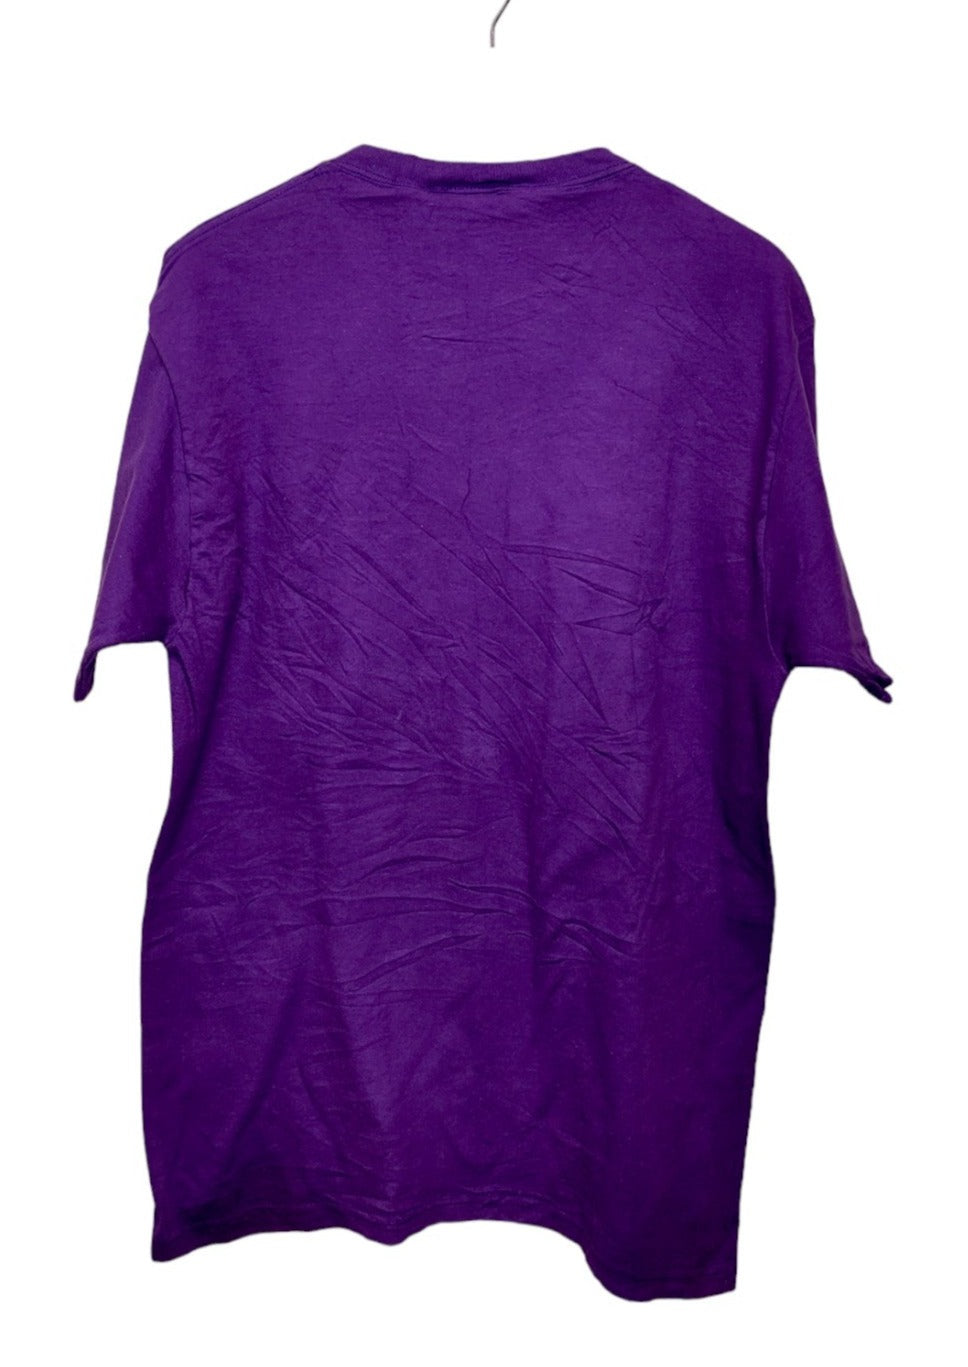 Ανδρική Μπλούζα - T- Shirt SPORT ATTACK σε Μωβ χρώμα (Large)